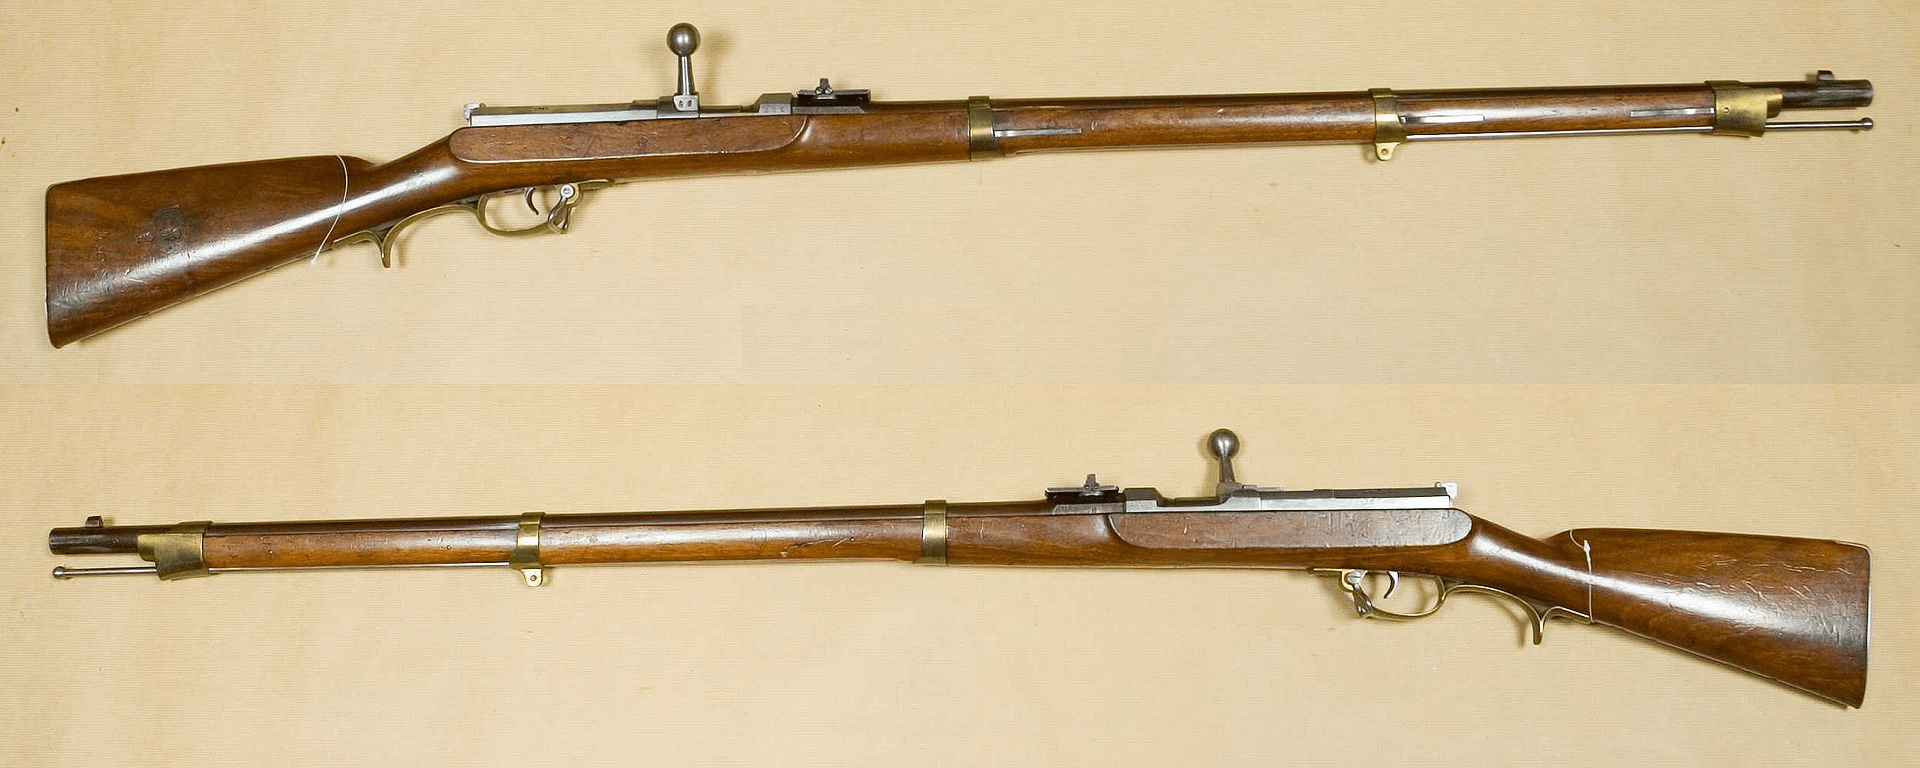 19世纪后半段的时候,德国和法国这对冤家的步枪一直是在进行竞争,额